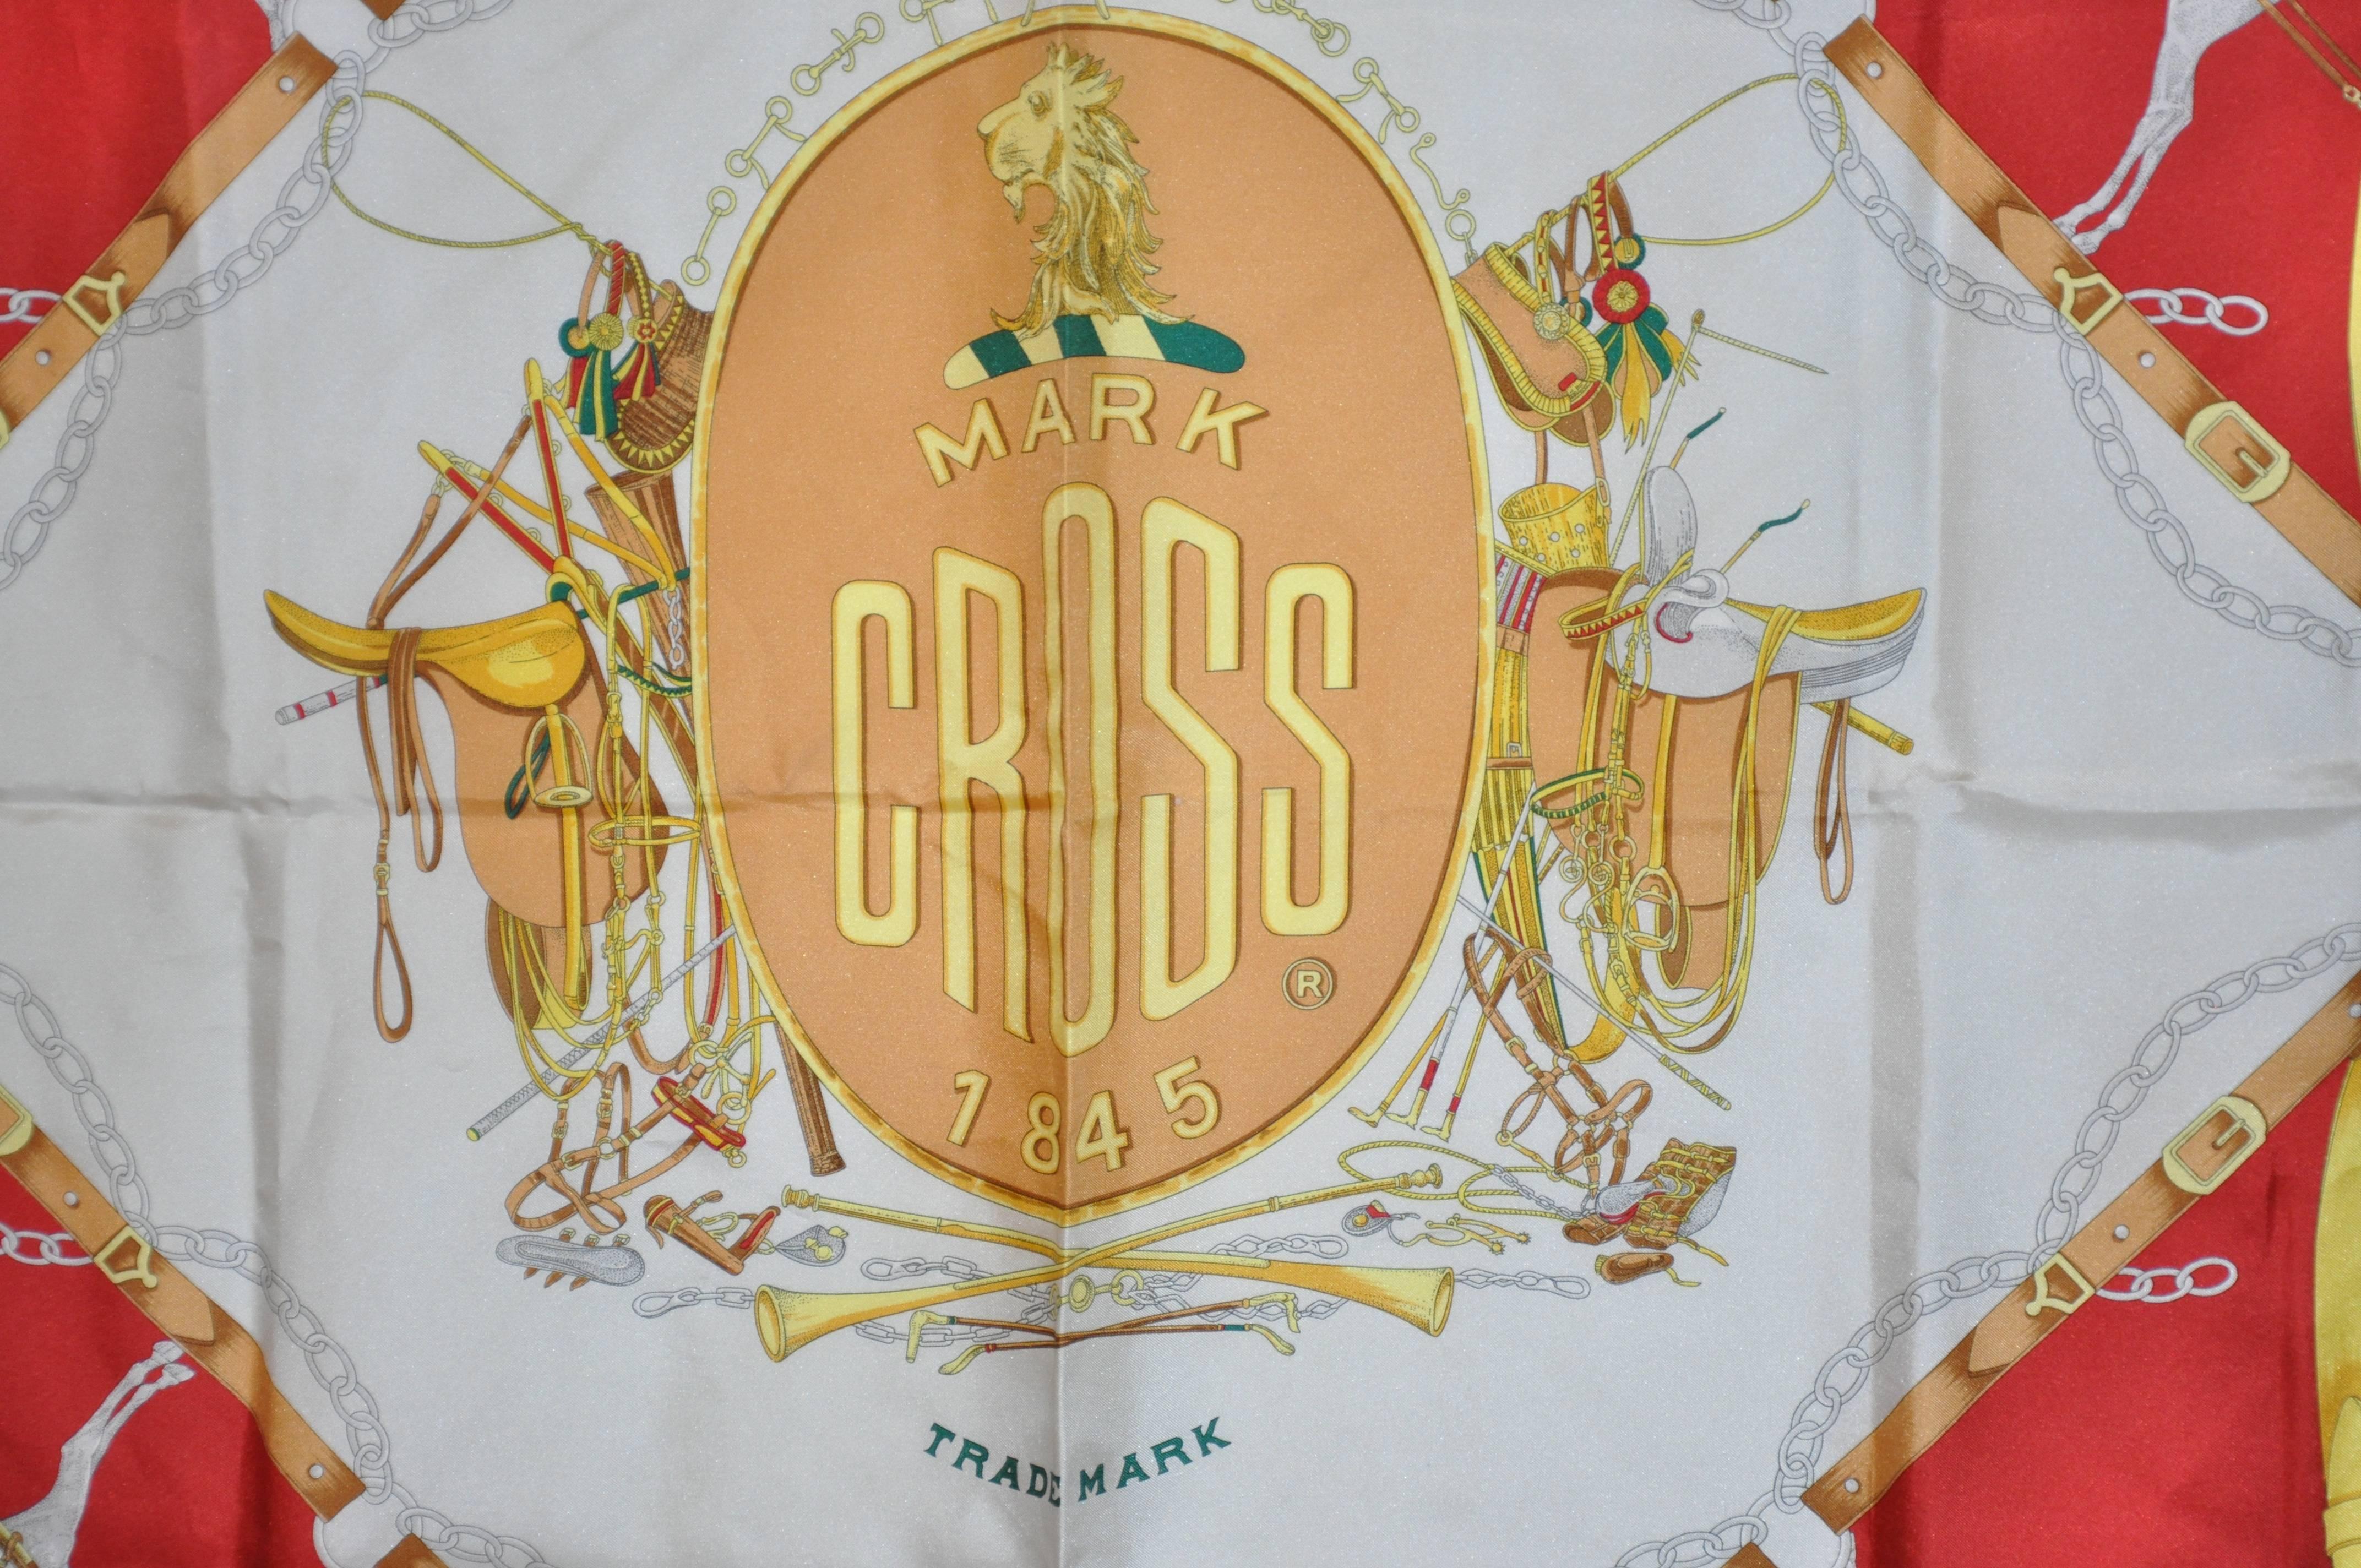        Mark Cross classic and elegant signature silk scarf measures 35